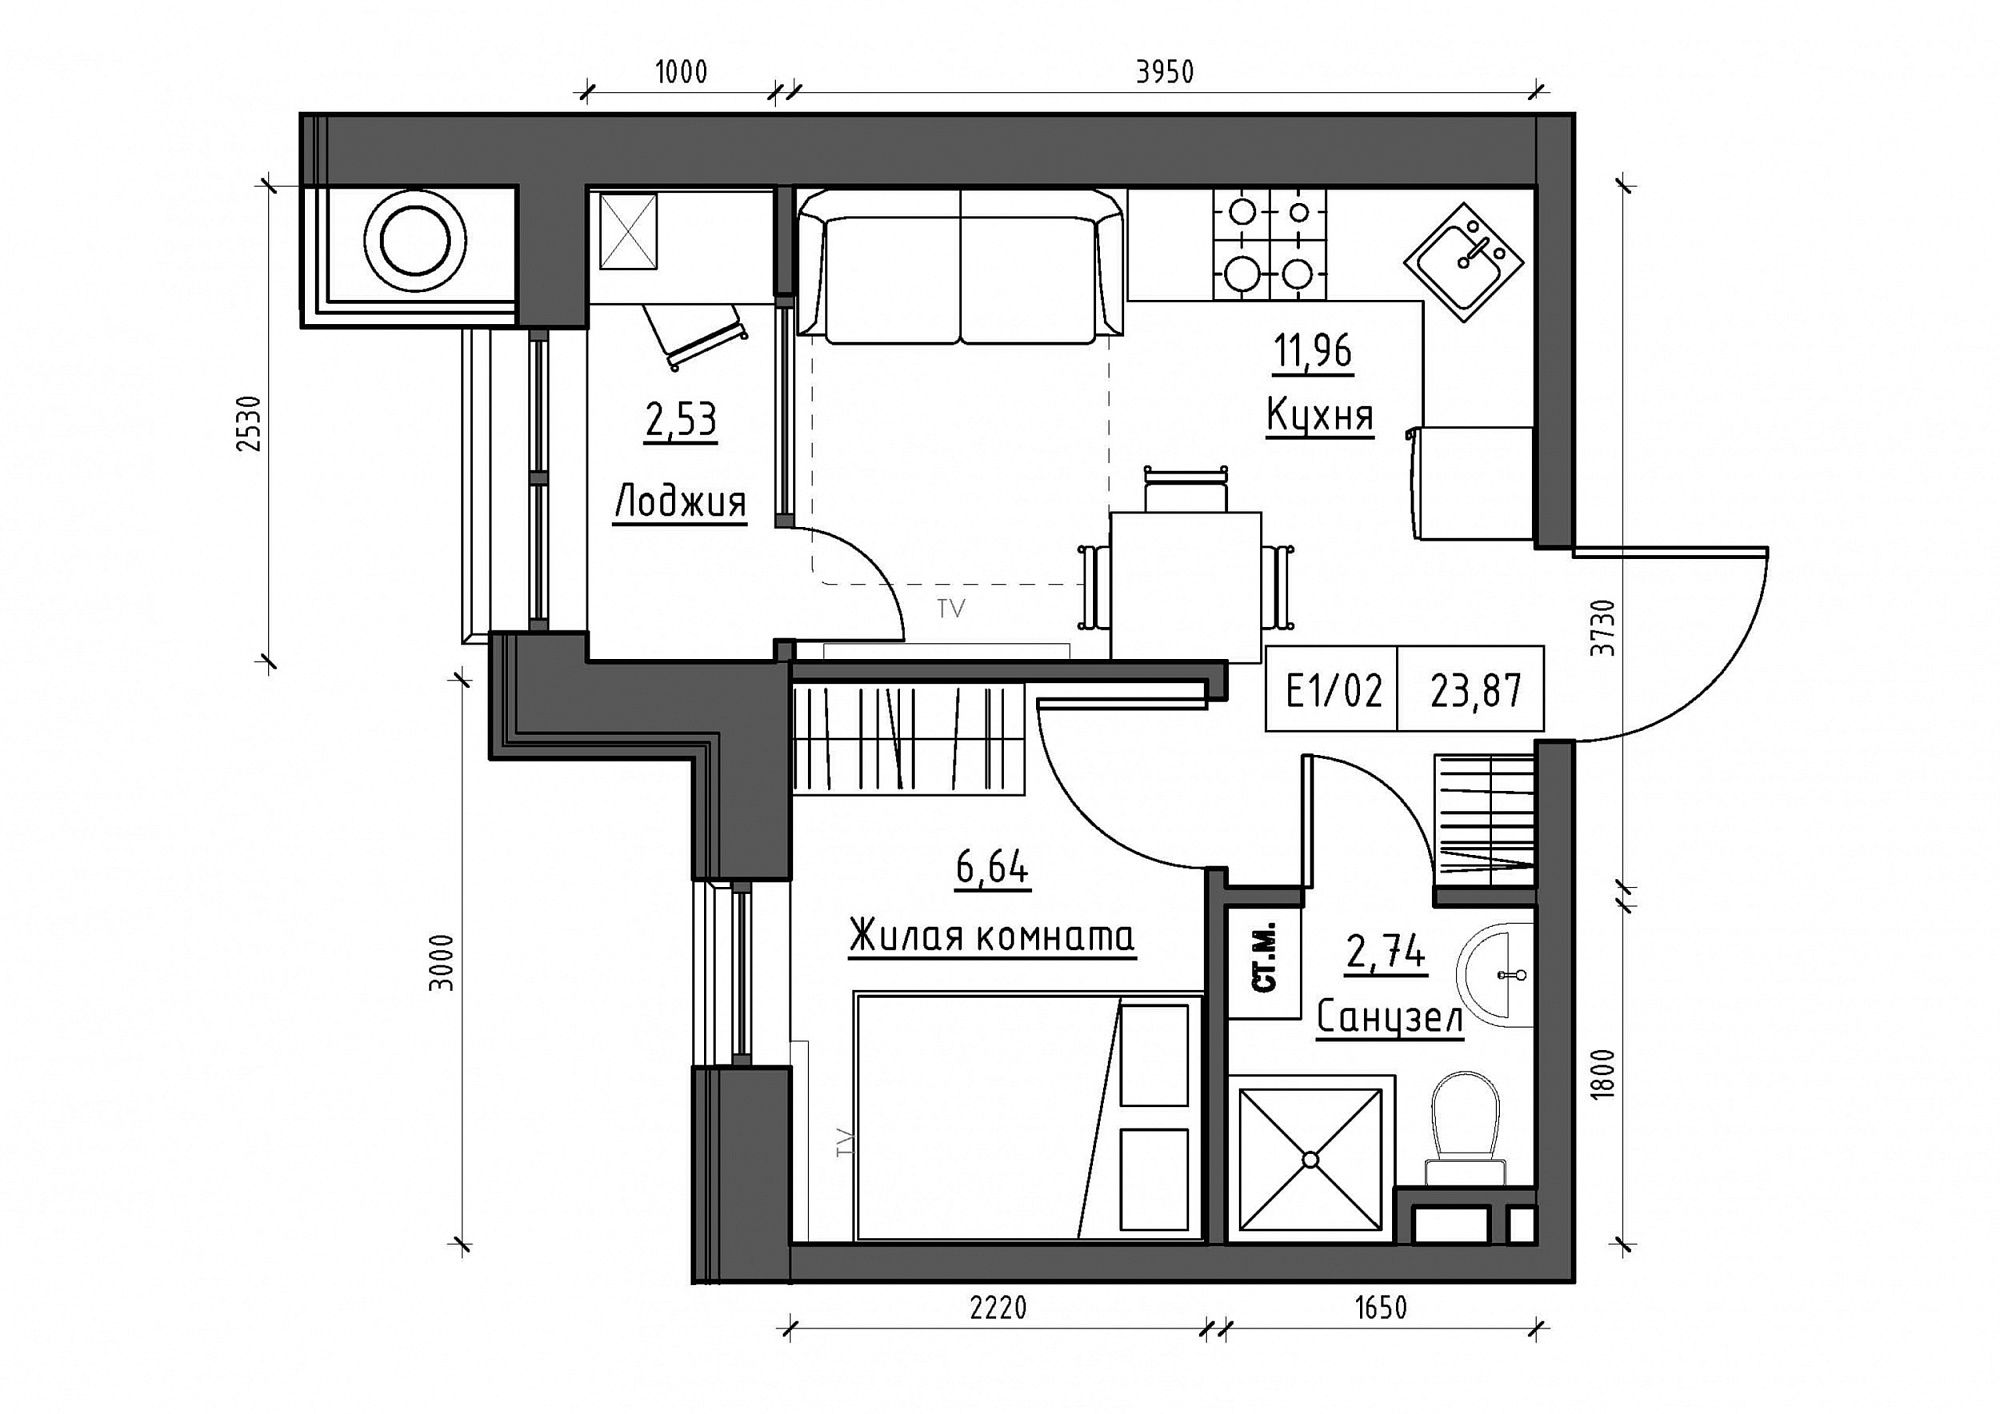 Планировка 1-к квартира площей 23.87м2, KS-011-02/0001.